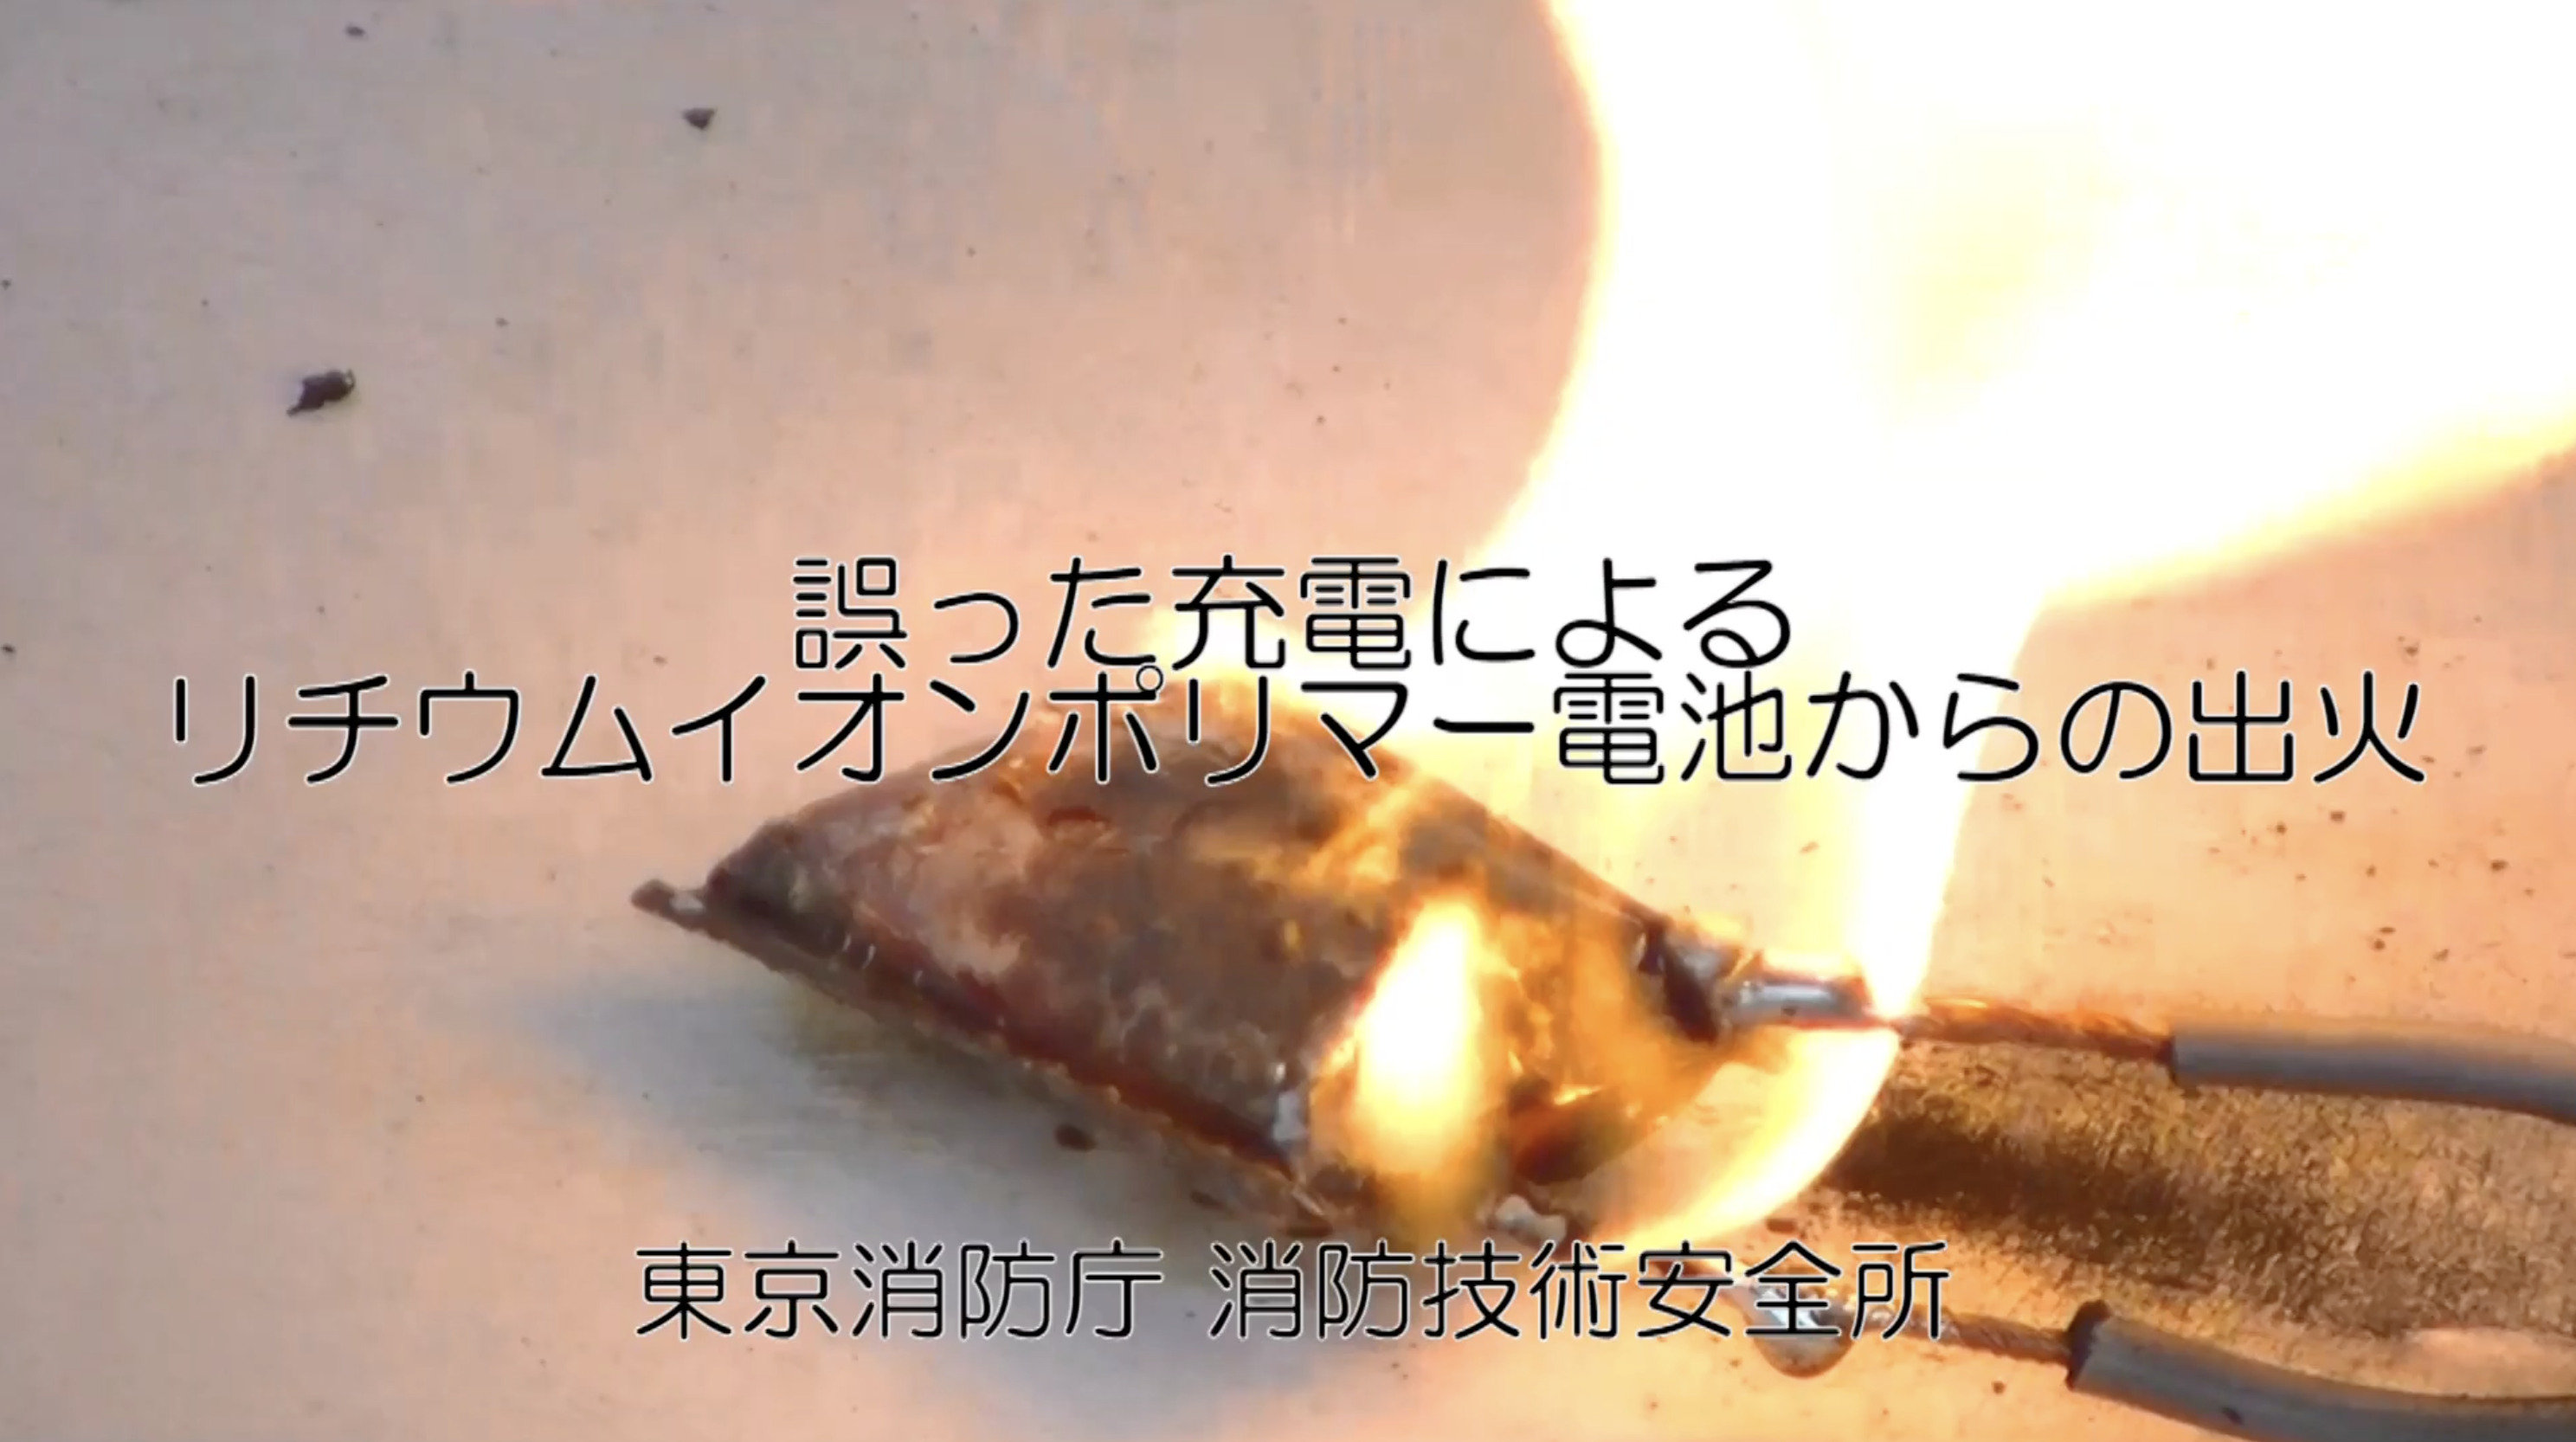 非純正充電器にてモバイルバッテリーを充電した際のリチウムイオンバッテリーの発火（東京消防庁公式チャンネル）